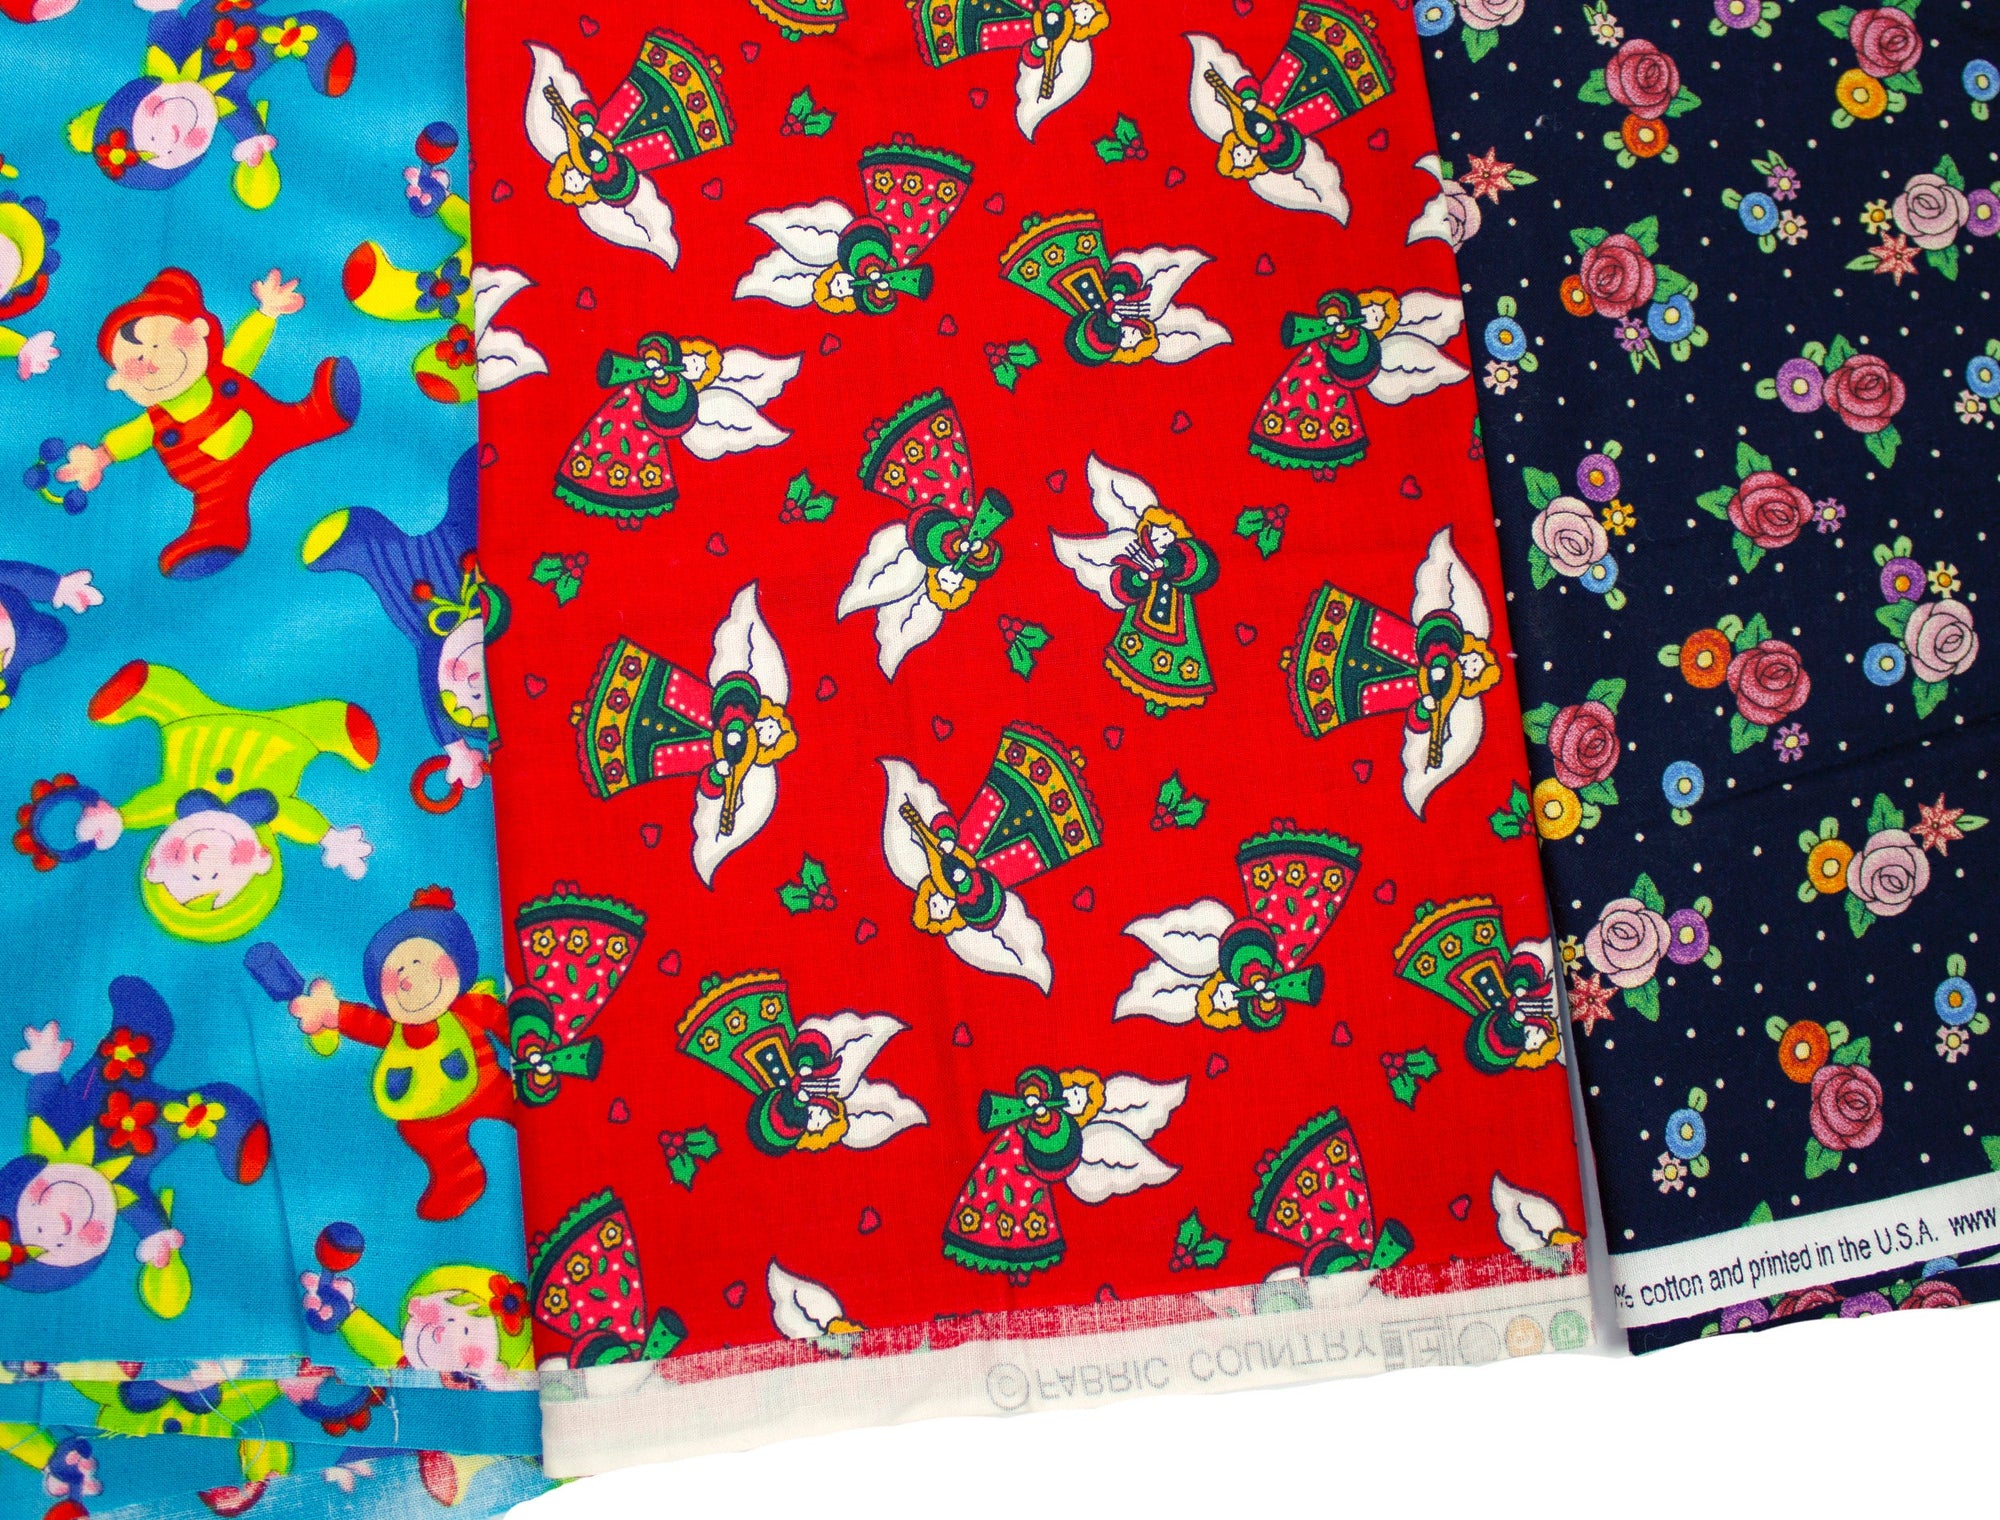 PUL fabric, Quintet Bundle Cut in Five Colors - One Metre Bundle of 5